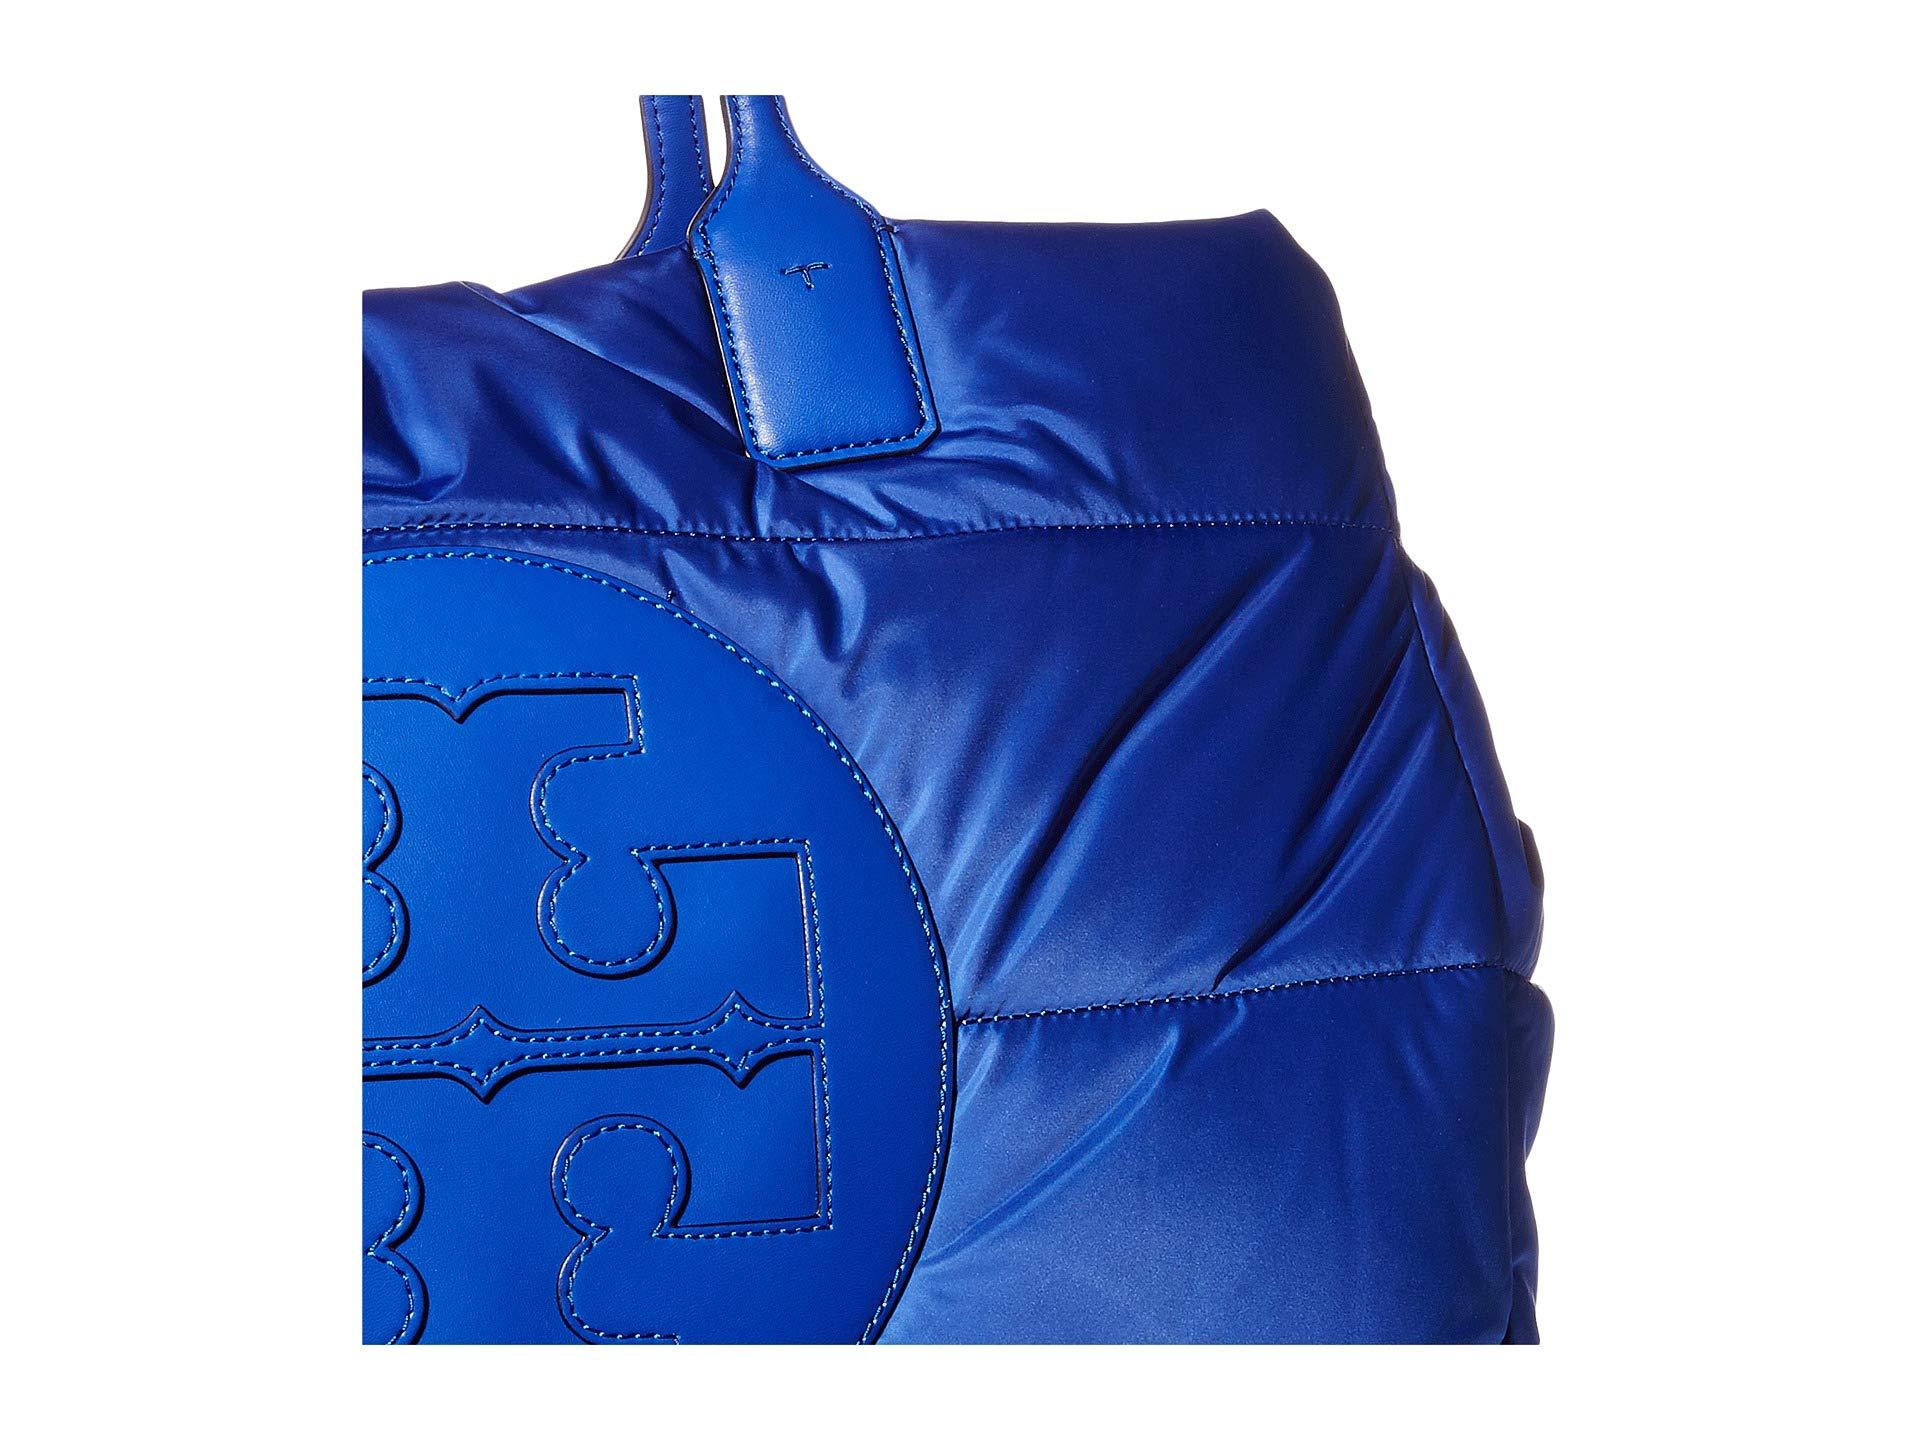 Totes bags Tory Burch - Ella maxi logo blue canvas tote bag - 45209410